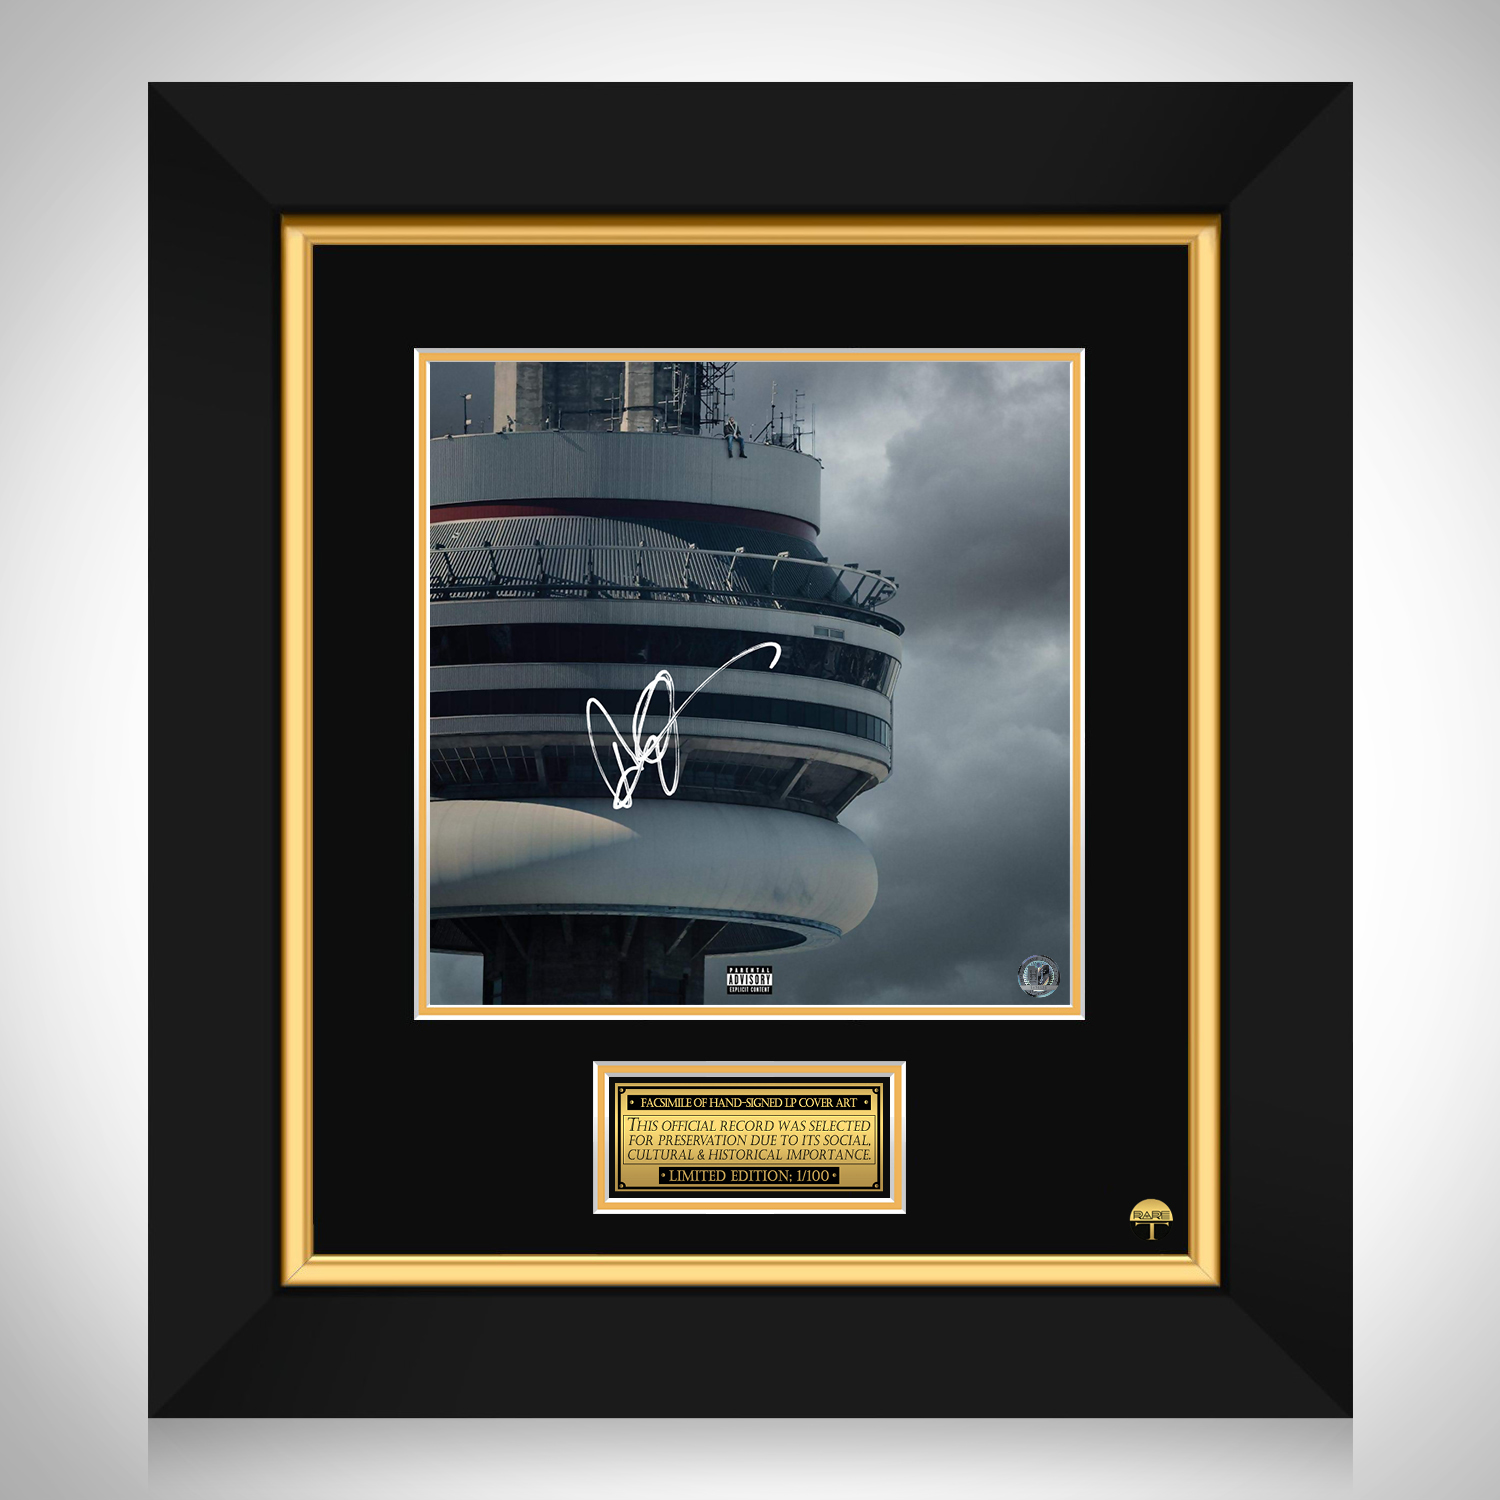 Album review: Drake's Views sacrifices quality for quantity